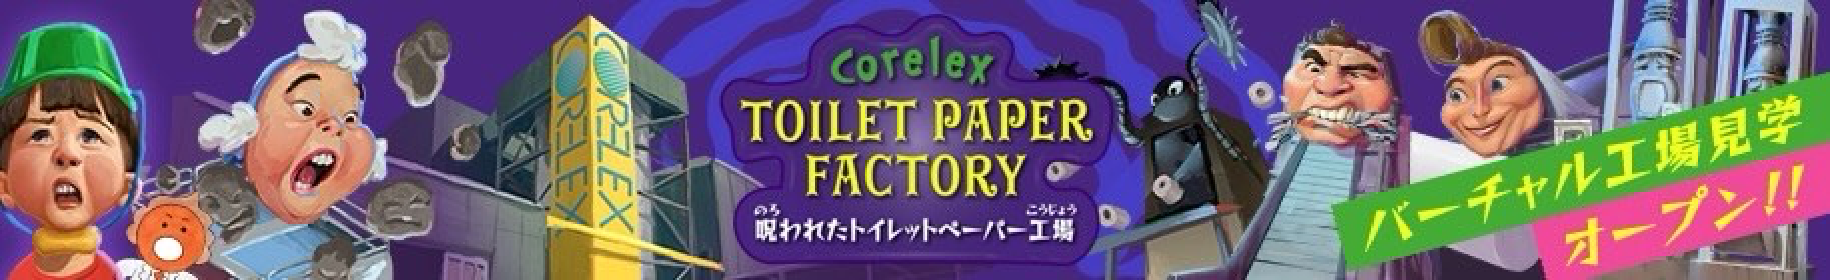 コアレックスのバーチャル工場見学：Corelex TOILET PAPER FACTORY 呪われたトイレットペーパー工場